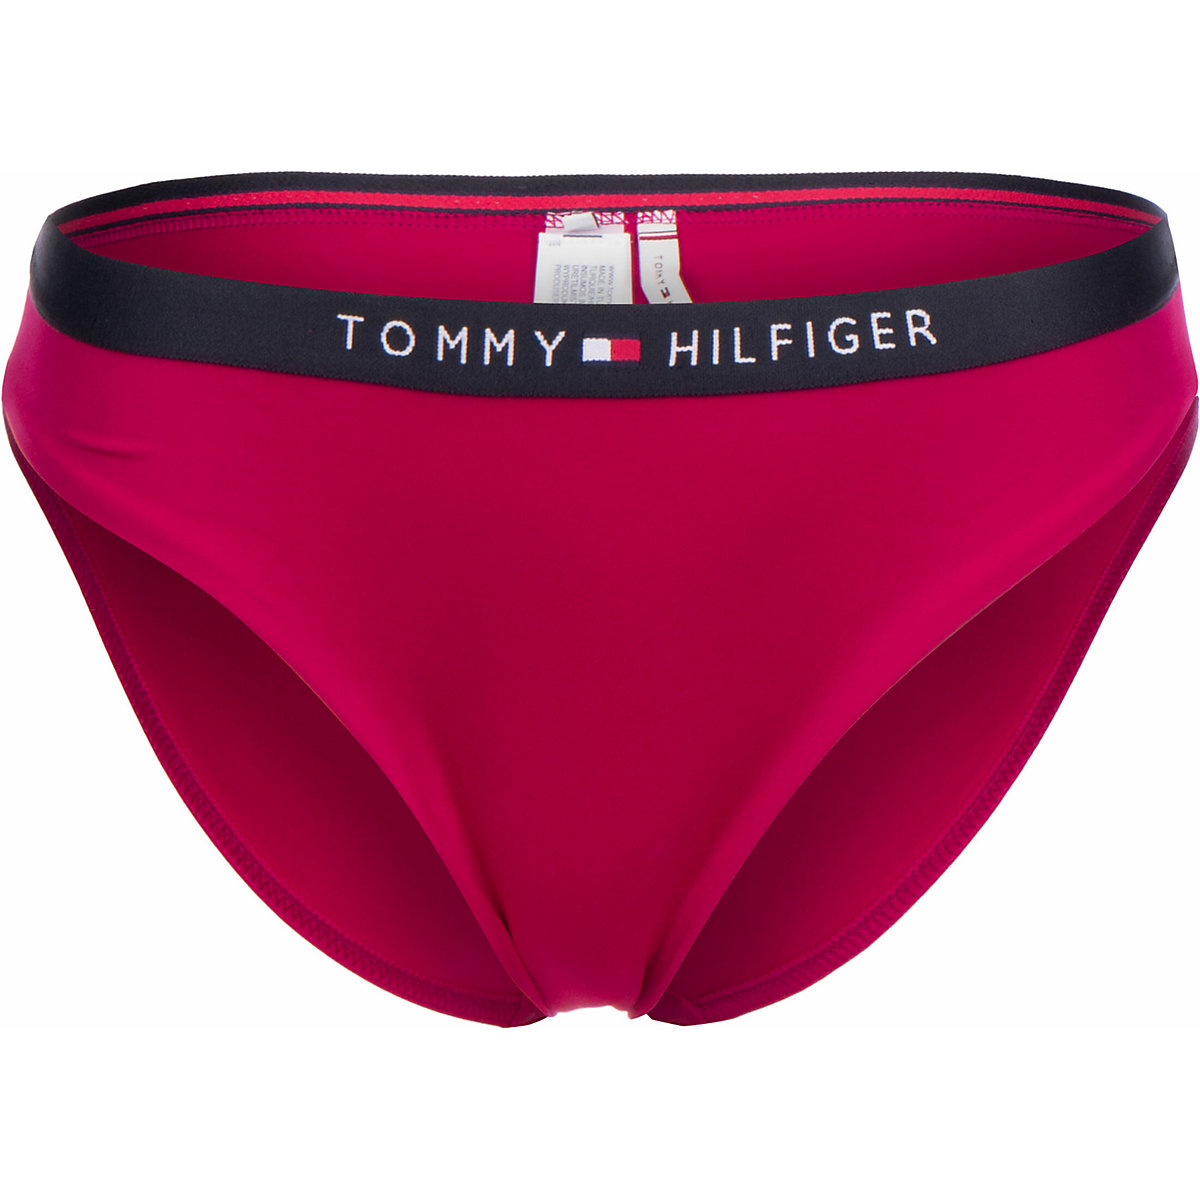 TOMMY HILFIGER Tommy Hilfiger Bikini Unterteil classic Bikini-Hosen rot